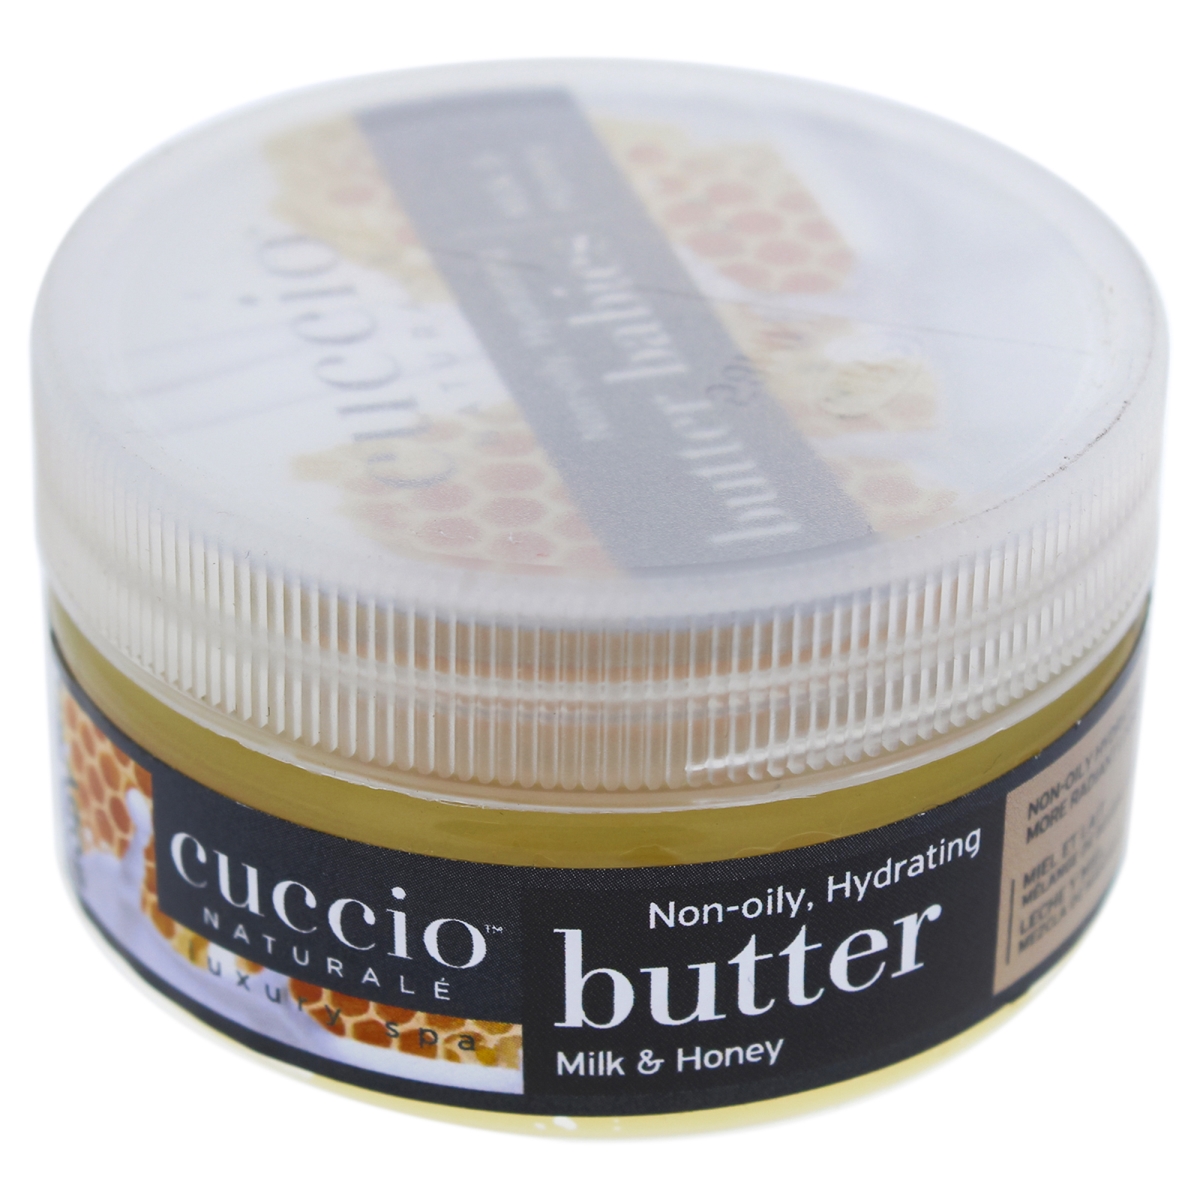 I0090875 Butter Babies Body Lotion For Unisex - Milk & Honey - 1.5 Oz